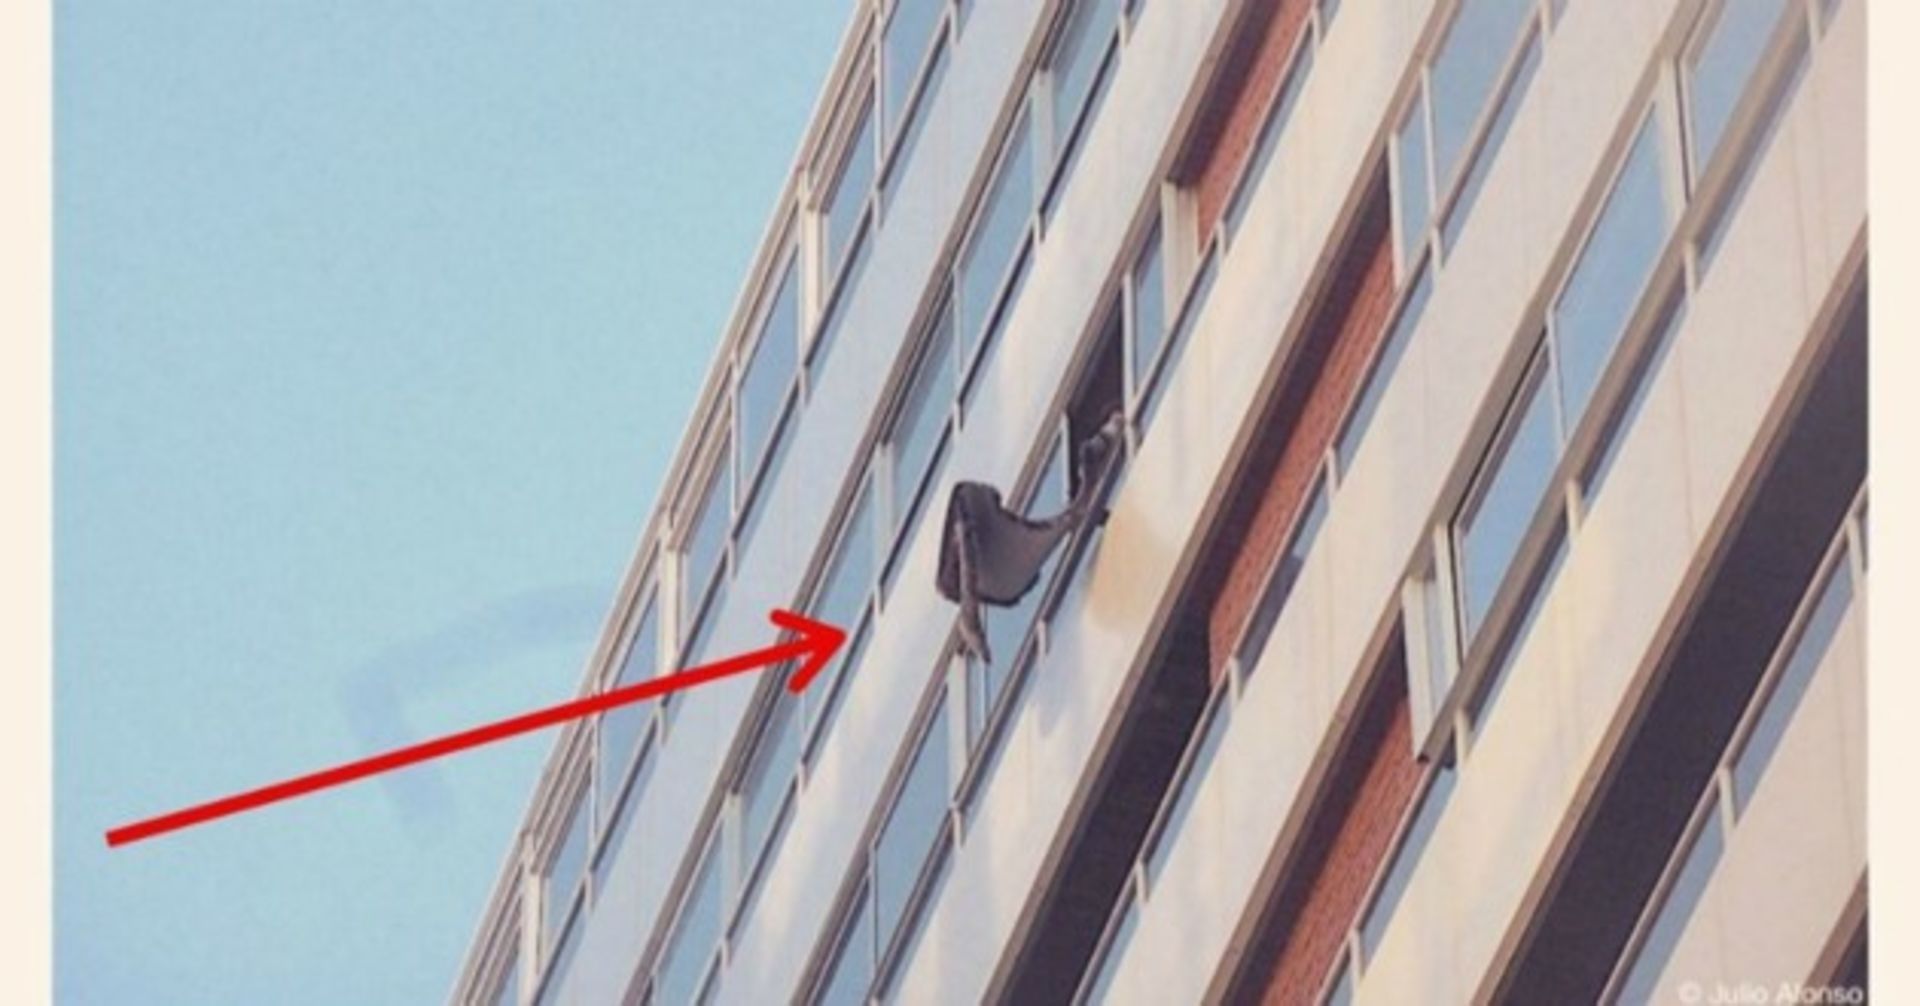 Frau wirft etwas vom Balkon: Als die Polizei kommt, sitzt der Schock tief